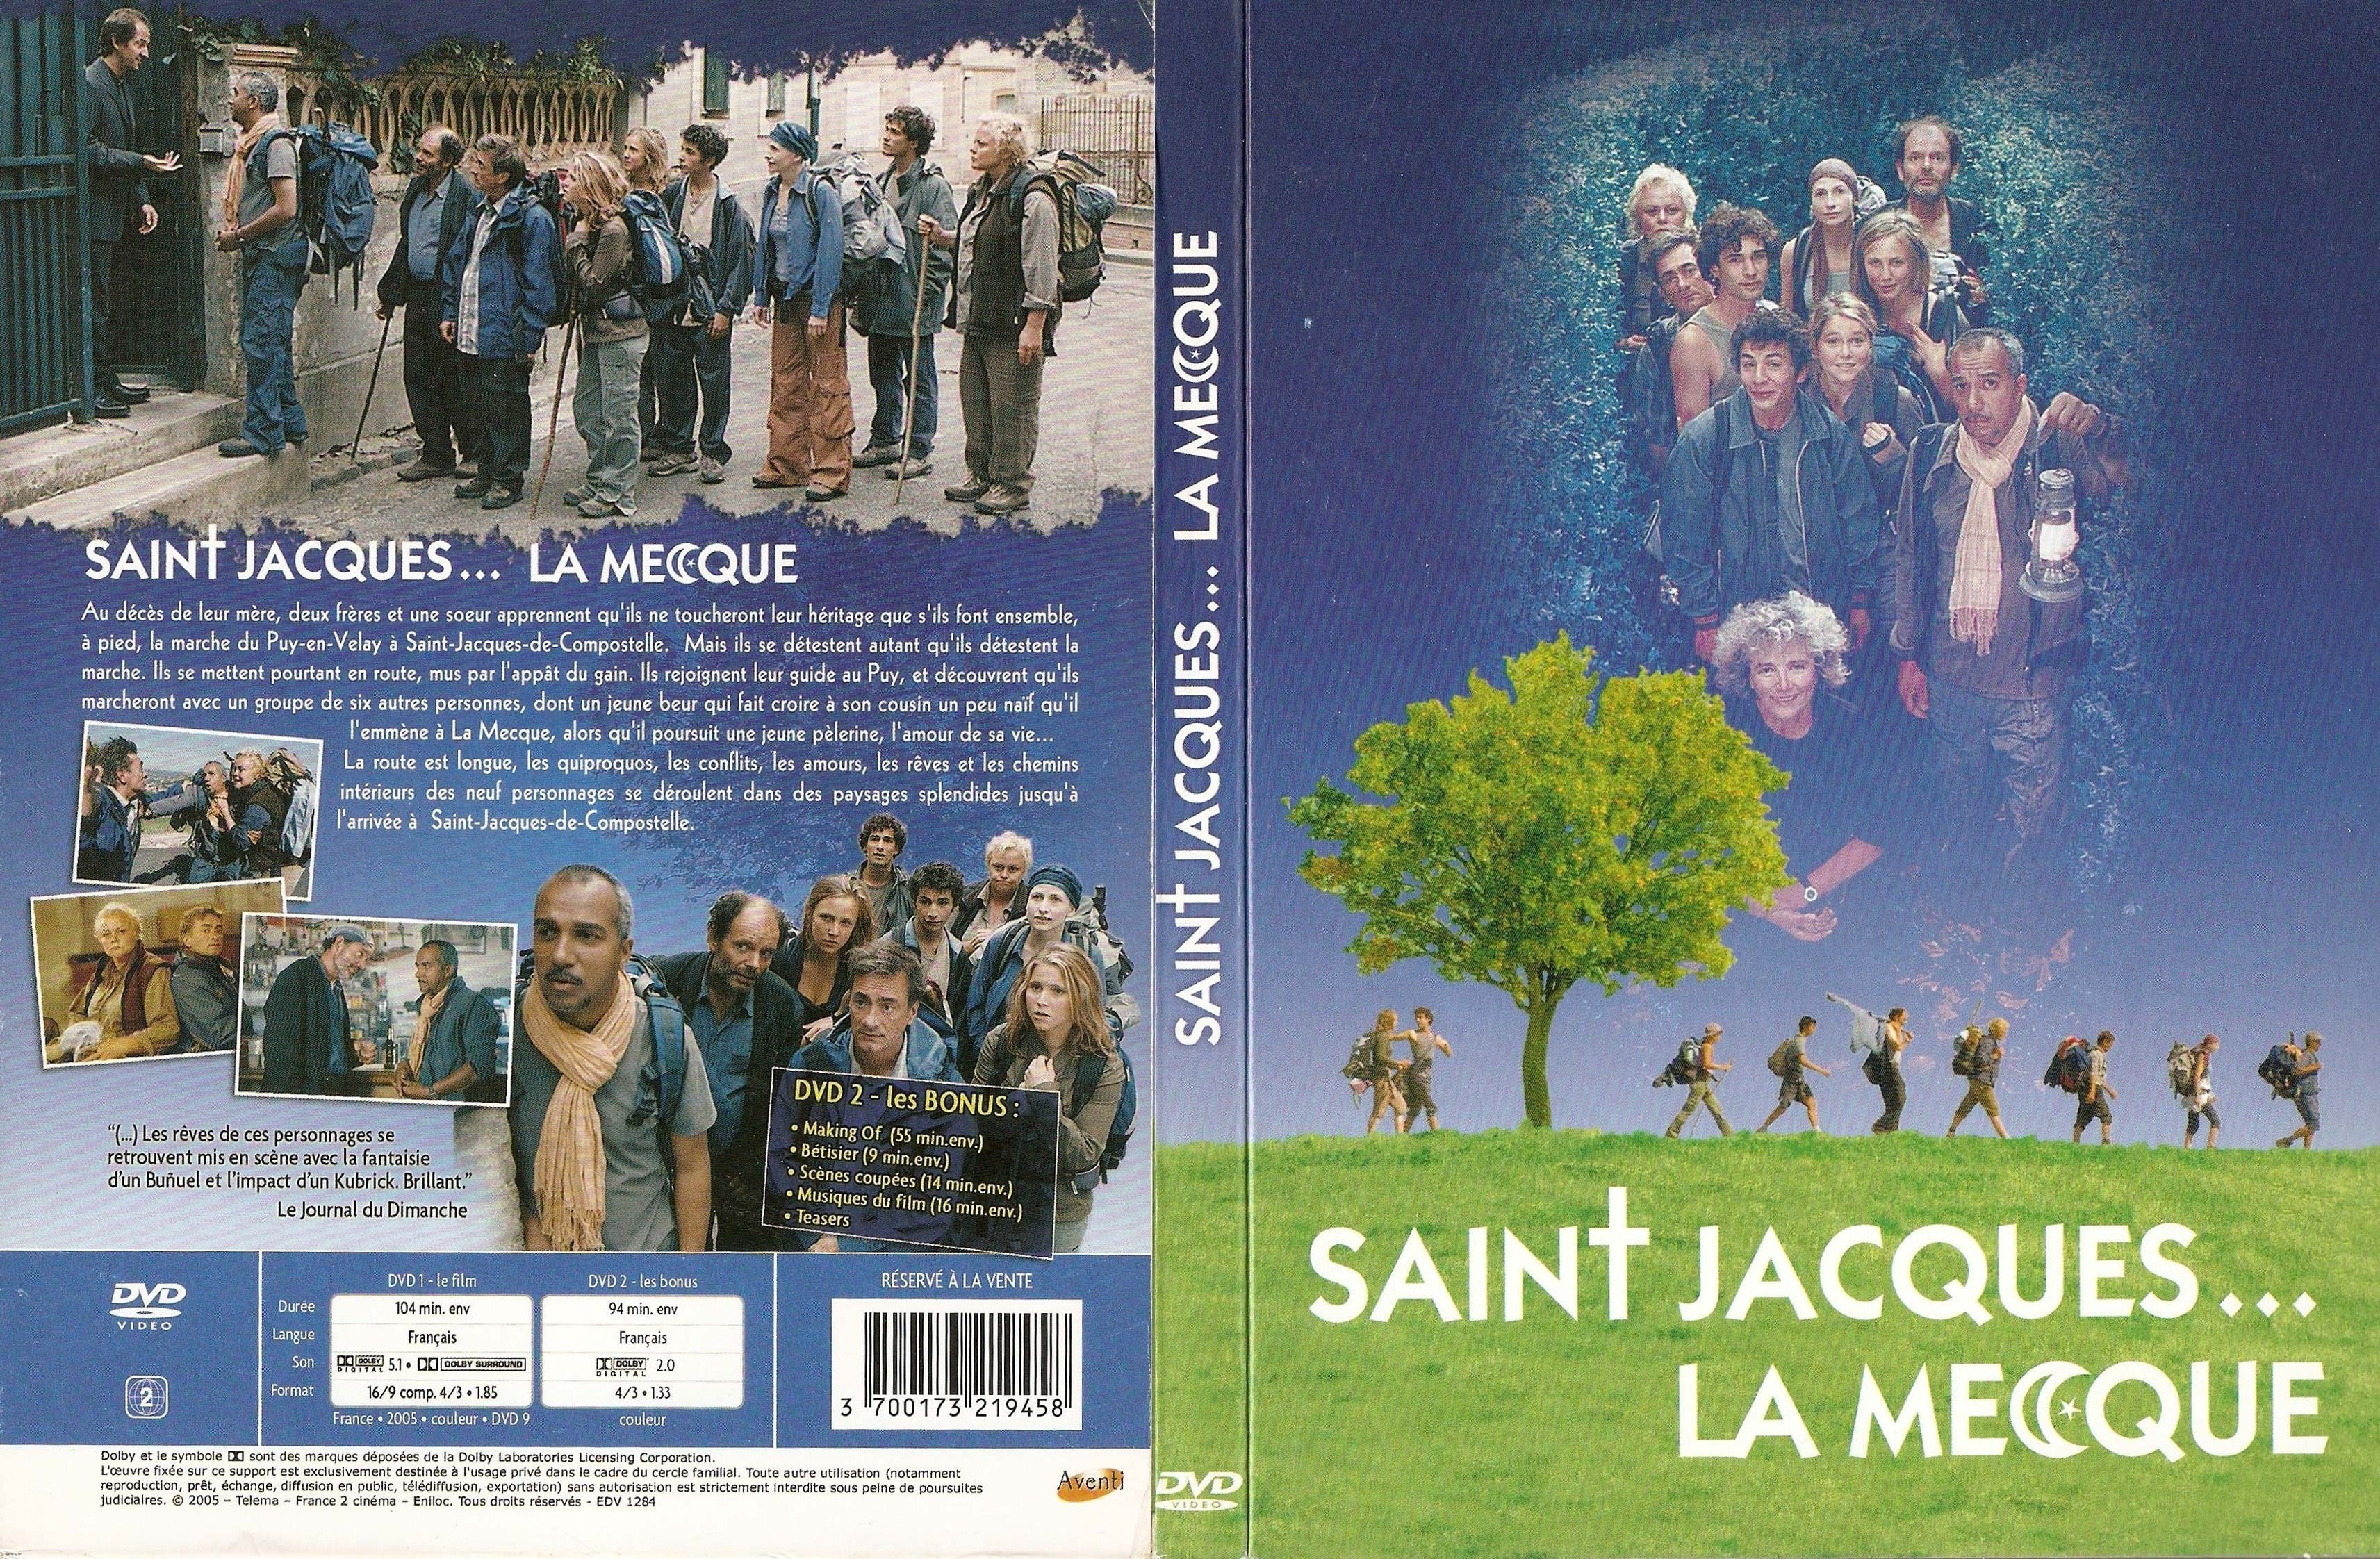 Jaquette DVD Saint-Jacques la mecque v3